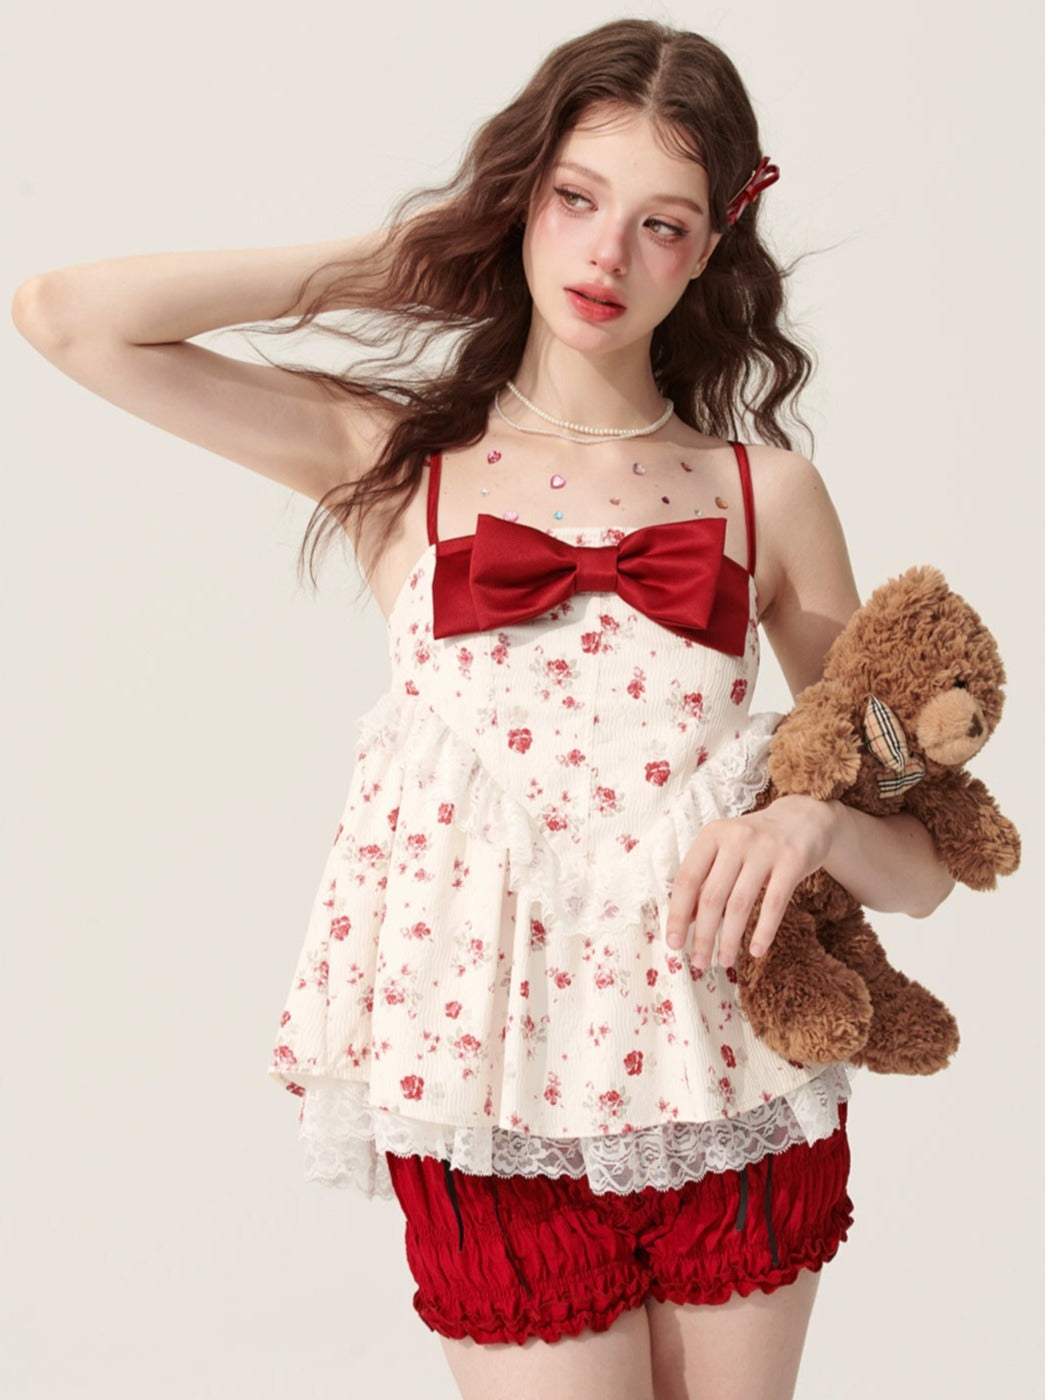 5월 31일 20시 판매】레스 아이 로즈 드림 리본 인형 셔츠 서스펜더 달콤한 티셔츠 여자